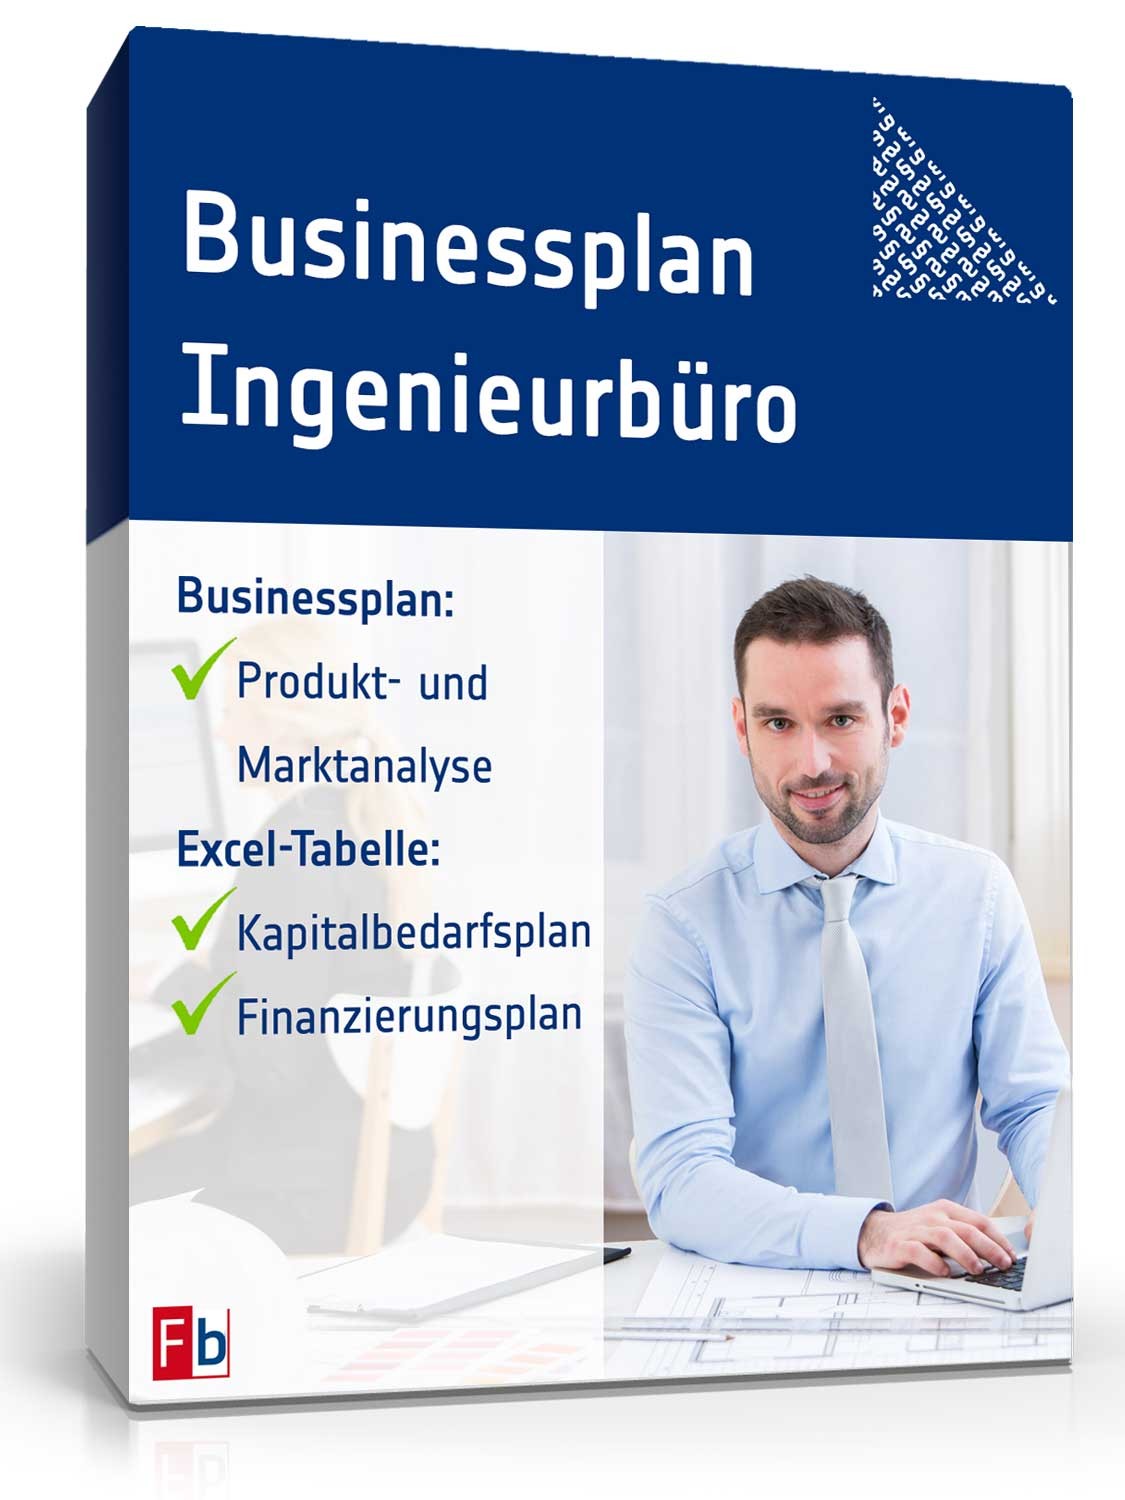 Hauptbild des Produkts: Businessplan Ingenieurbüro